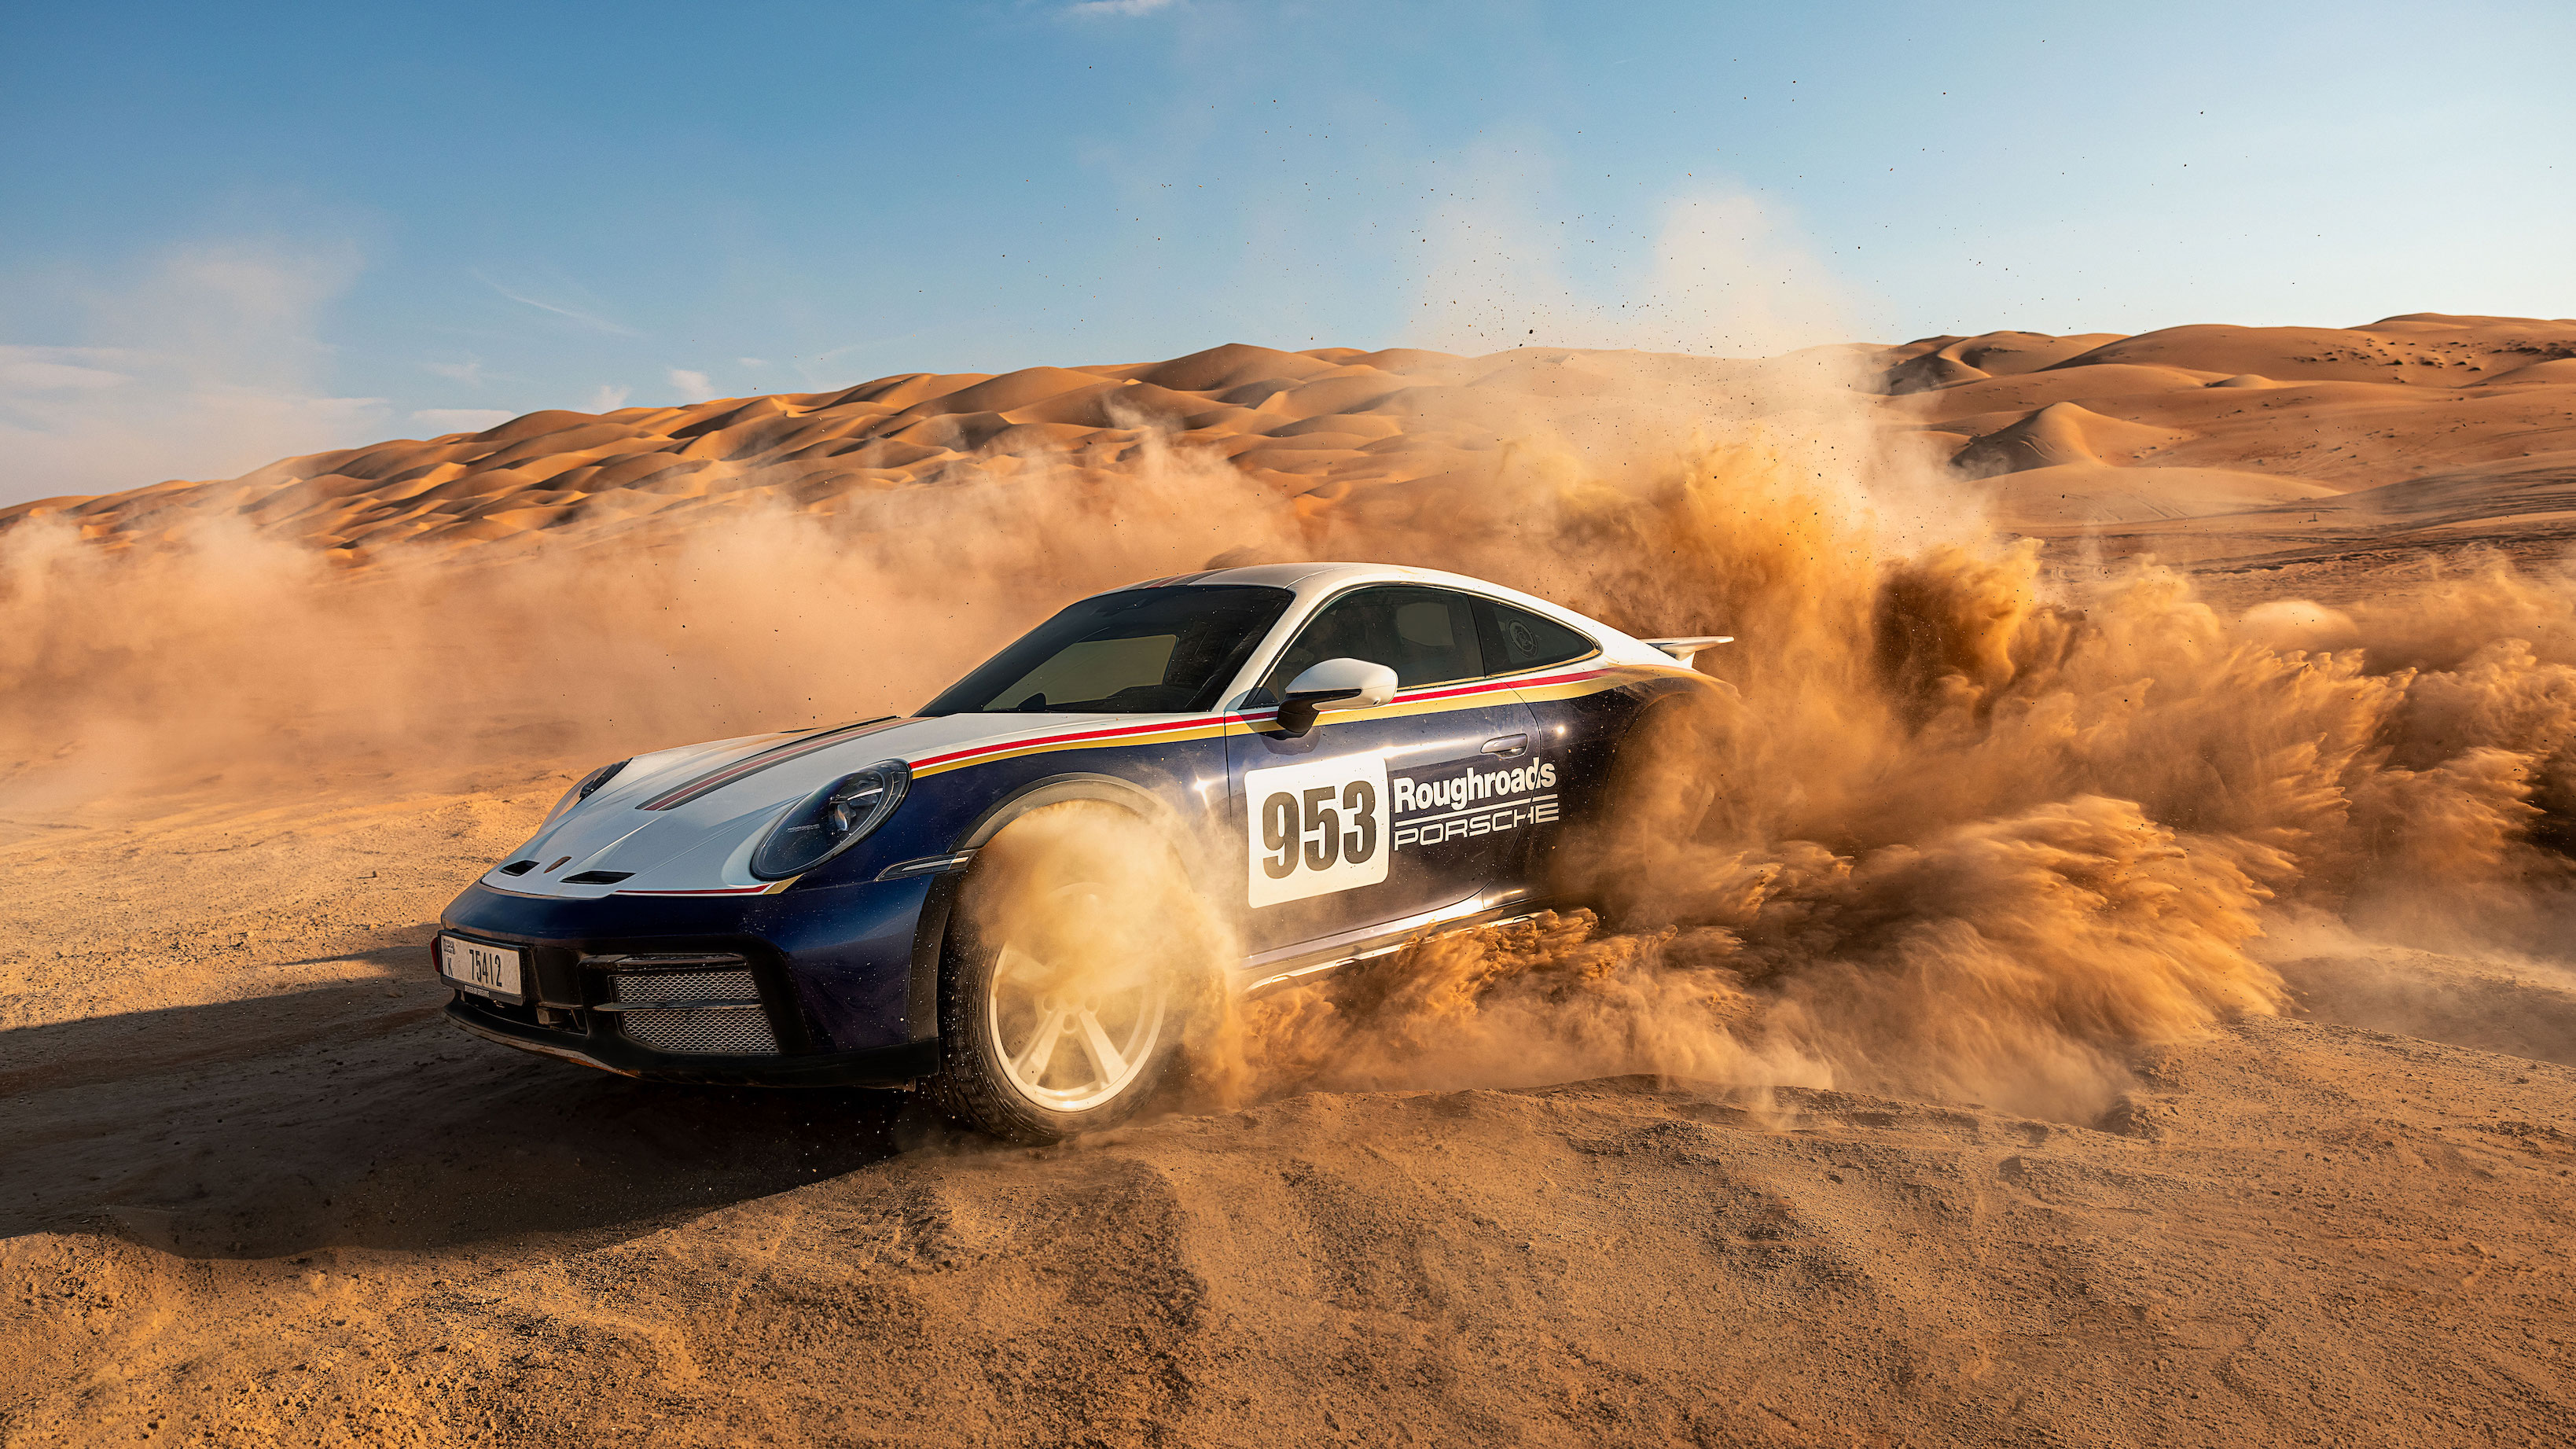 Porsche 911 Dakar racing in desert, dunes in background